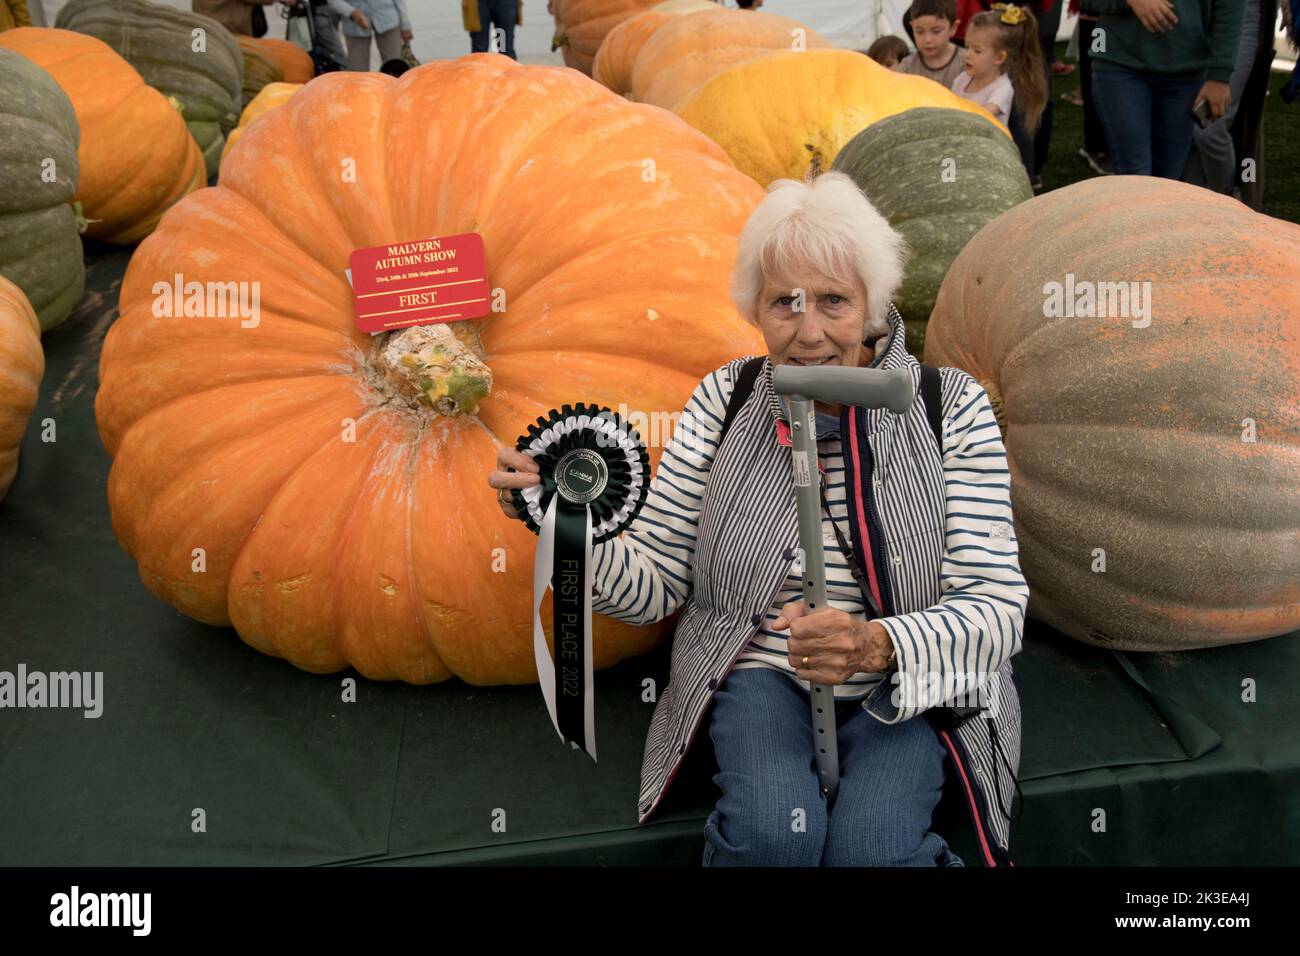 Donna seduta da zucche giganti sono alcuni dei vegetali giganti a tre contee Autumn Show Great Malvern, UK Foto Stock